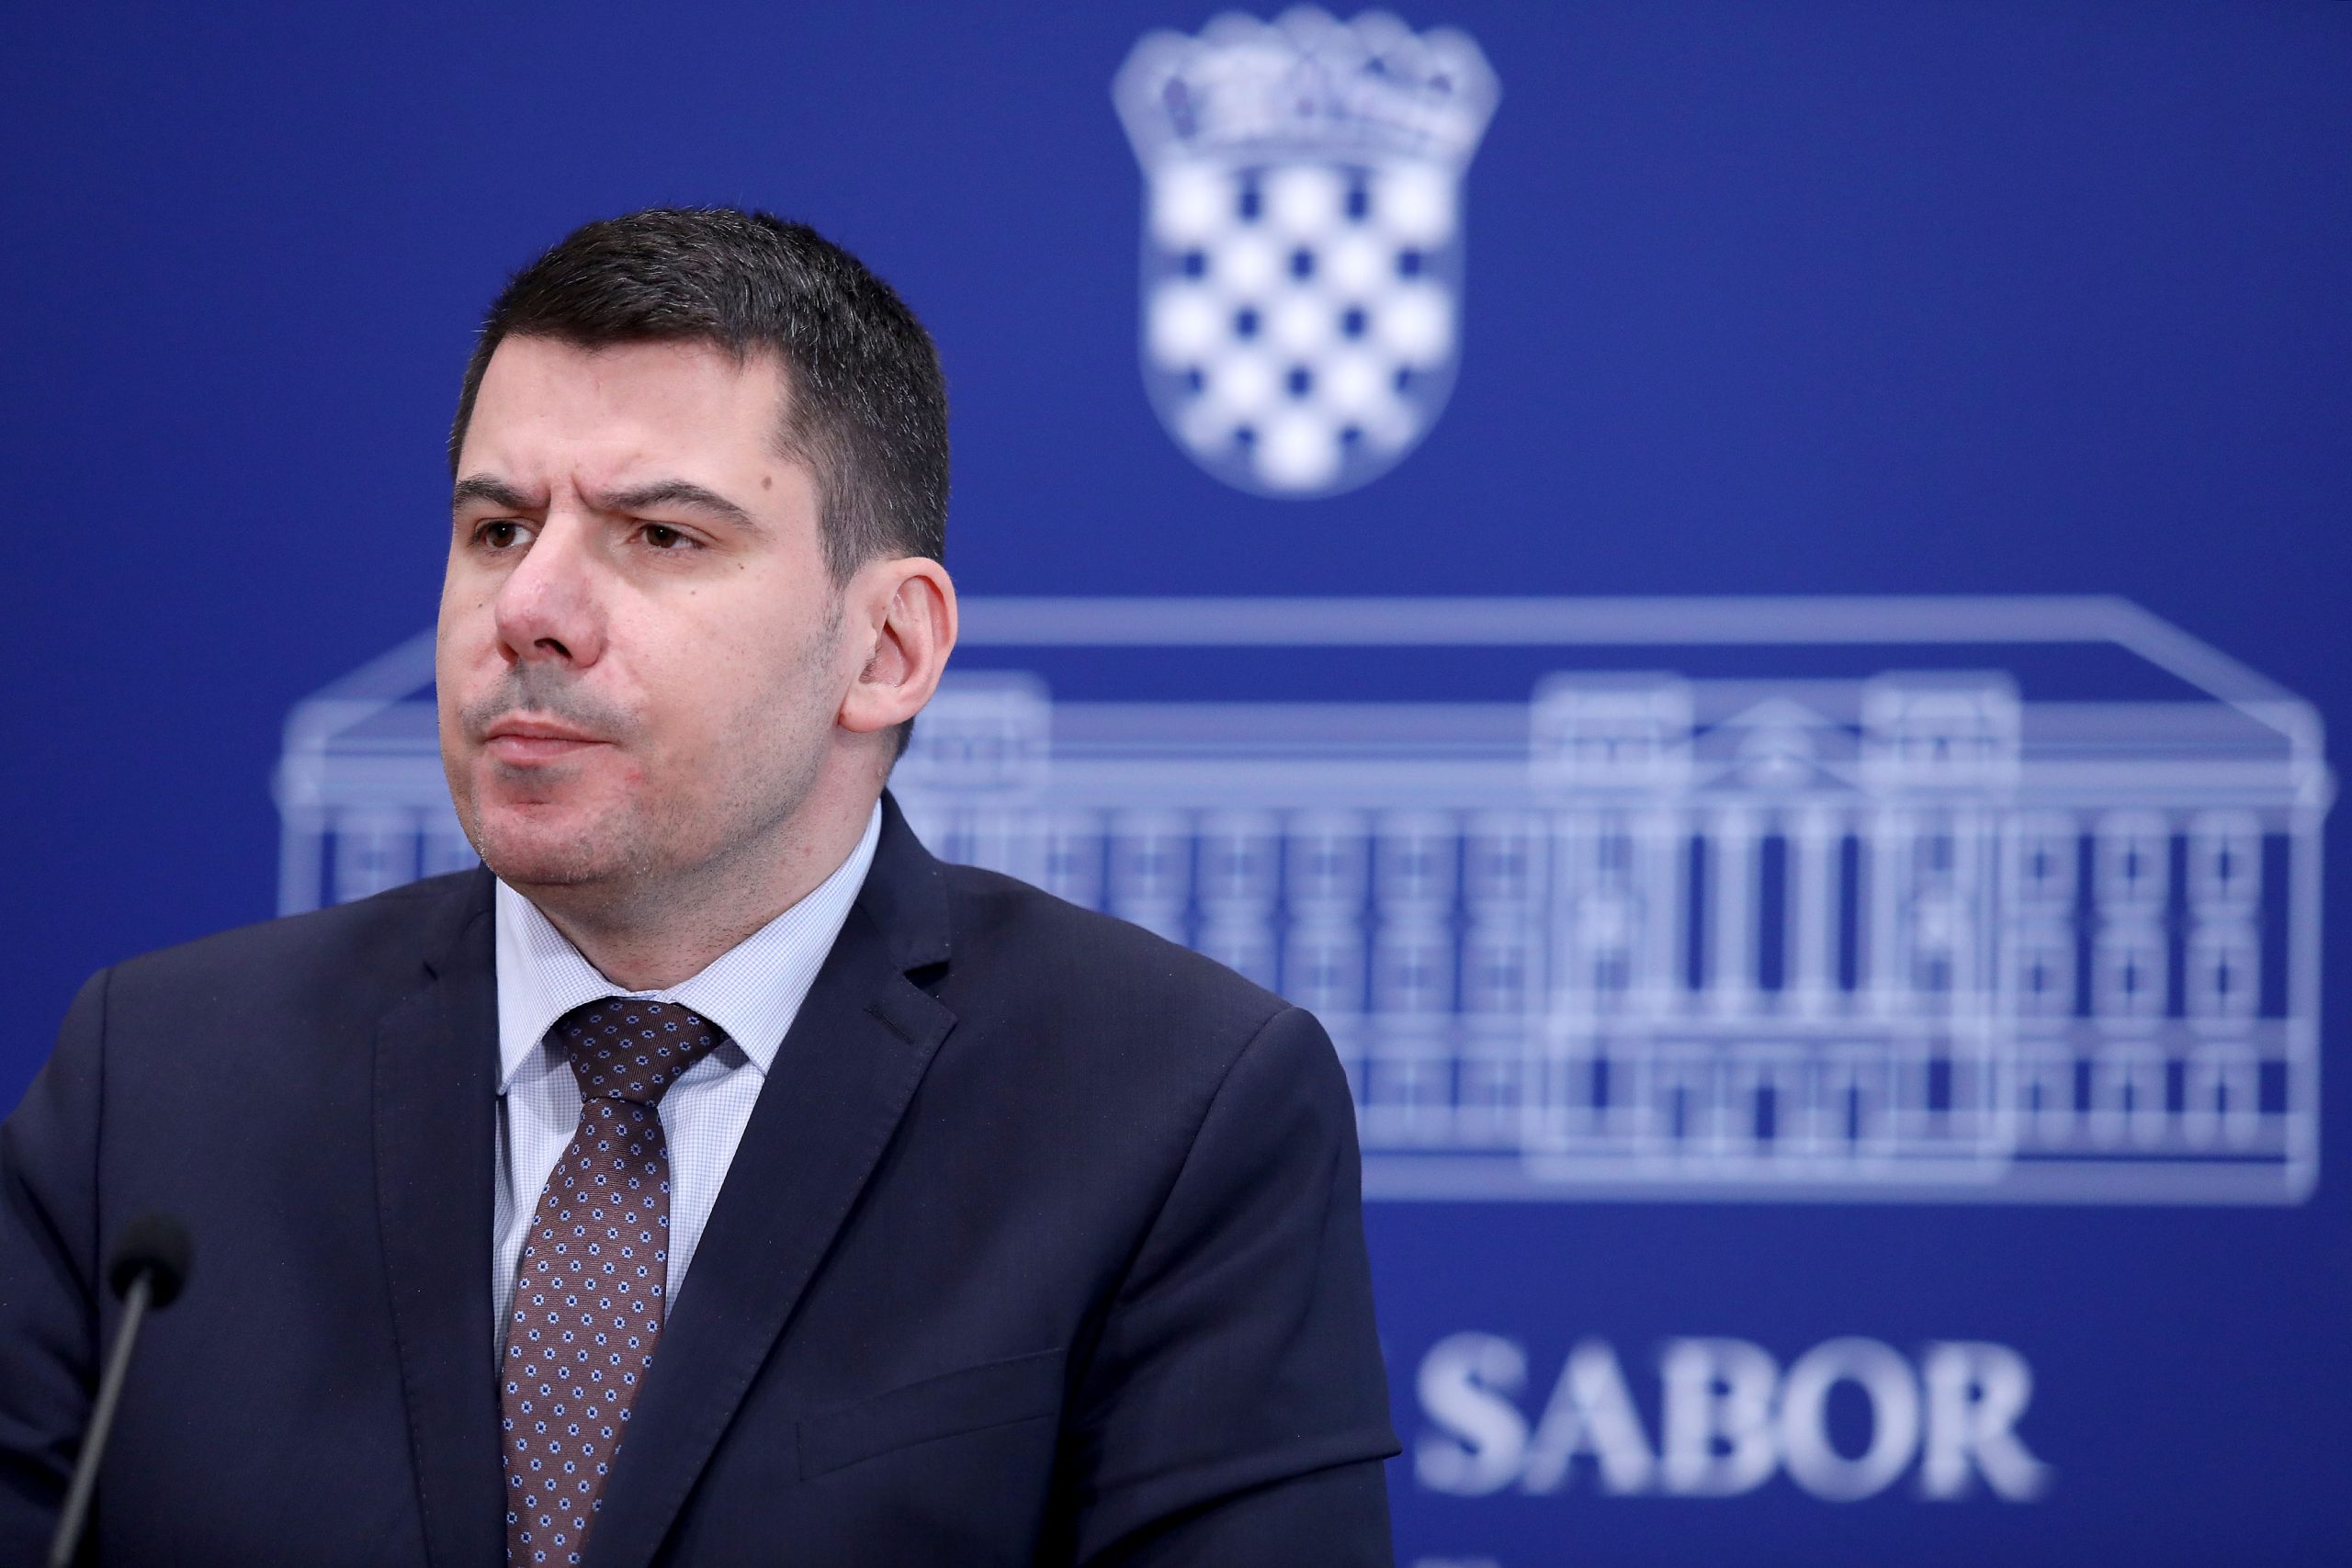 15.05.2020., Zagreb - Zastupnik MOST-a Nikola Grmoja komentirao je raspustanje Sabora i pripreme za izbore. Photo: Patrik Macek/PIXSELL